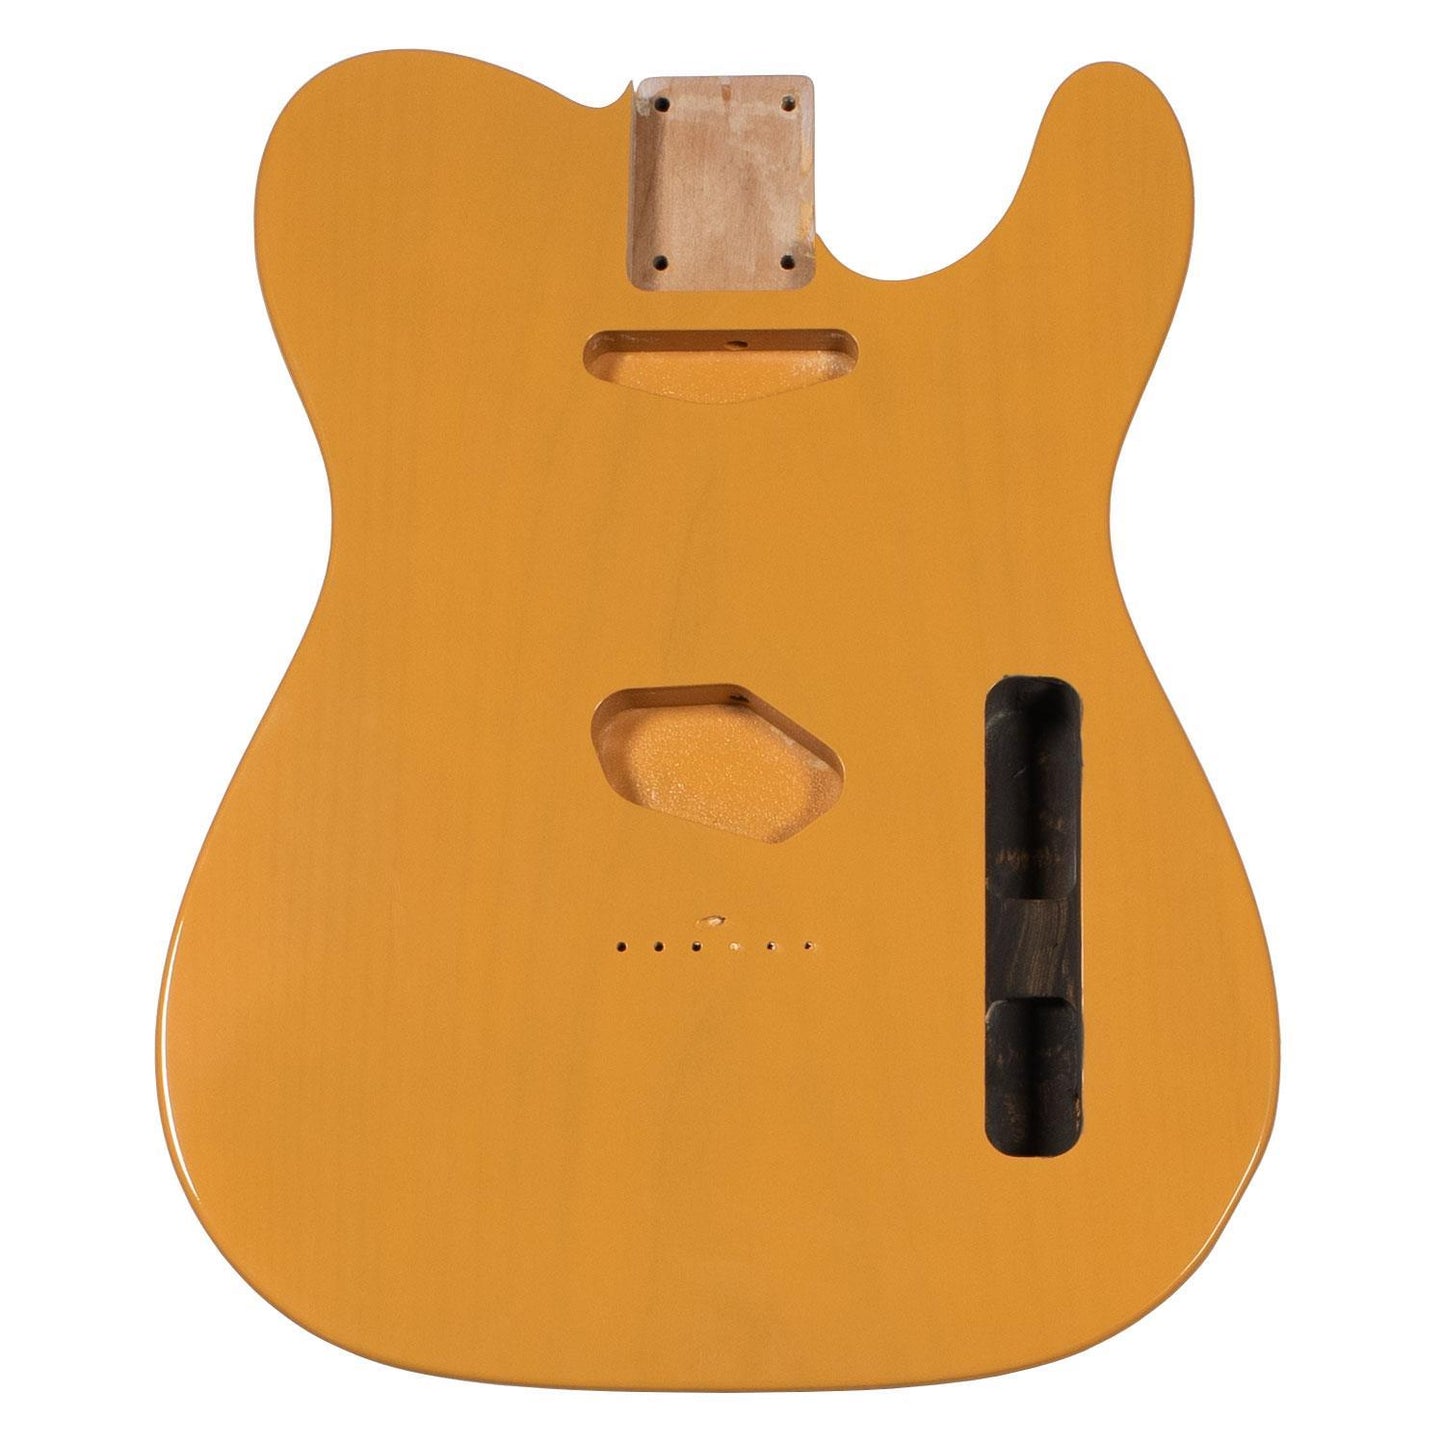 Butterscotch Blonde Nitrocellulose Guitar Paint/Lacquer - 250ml